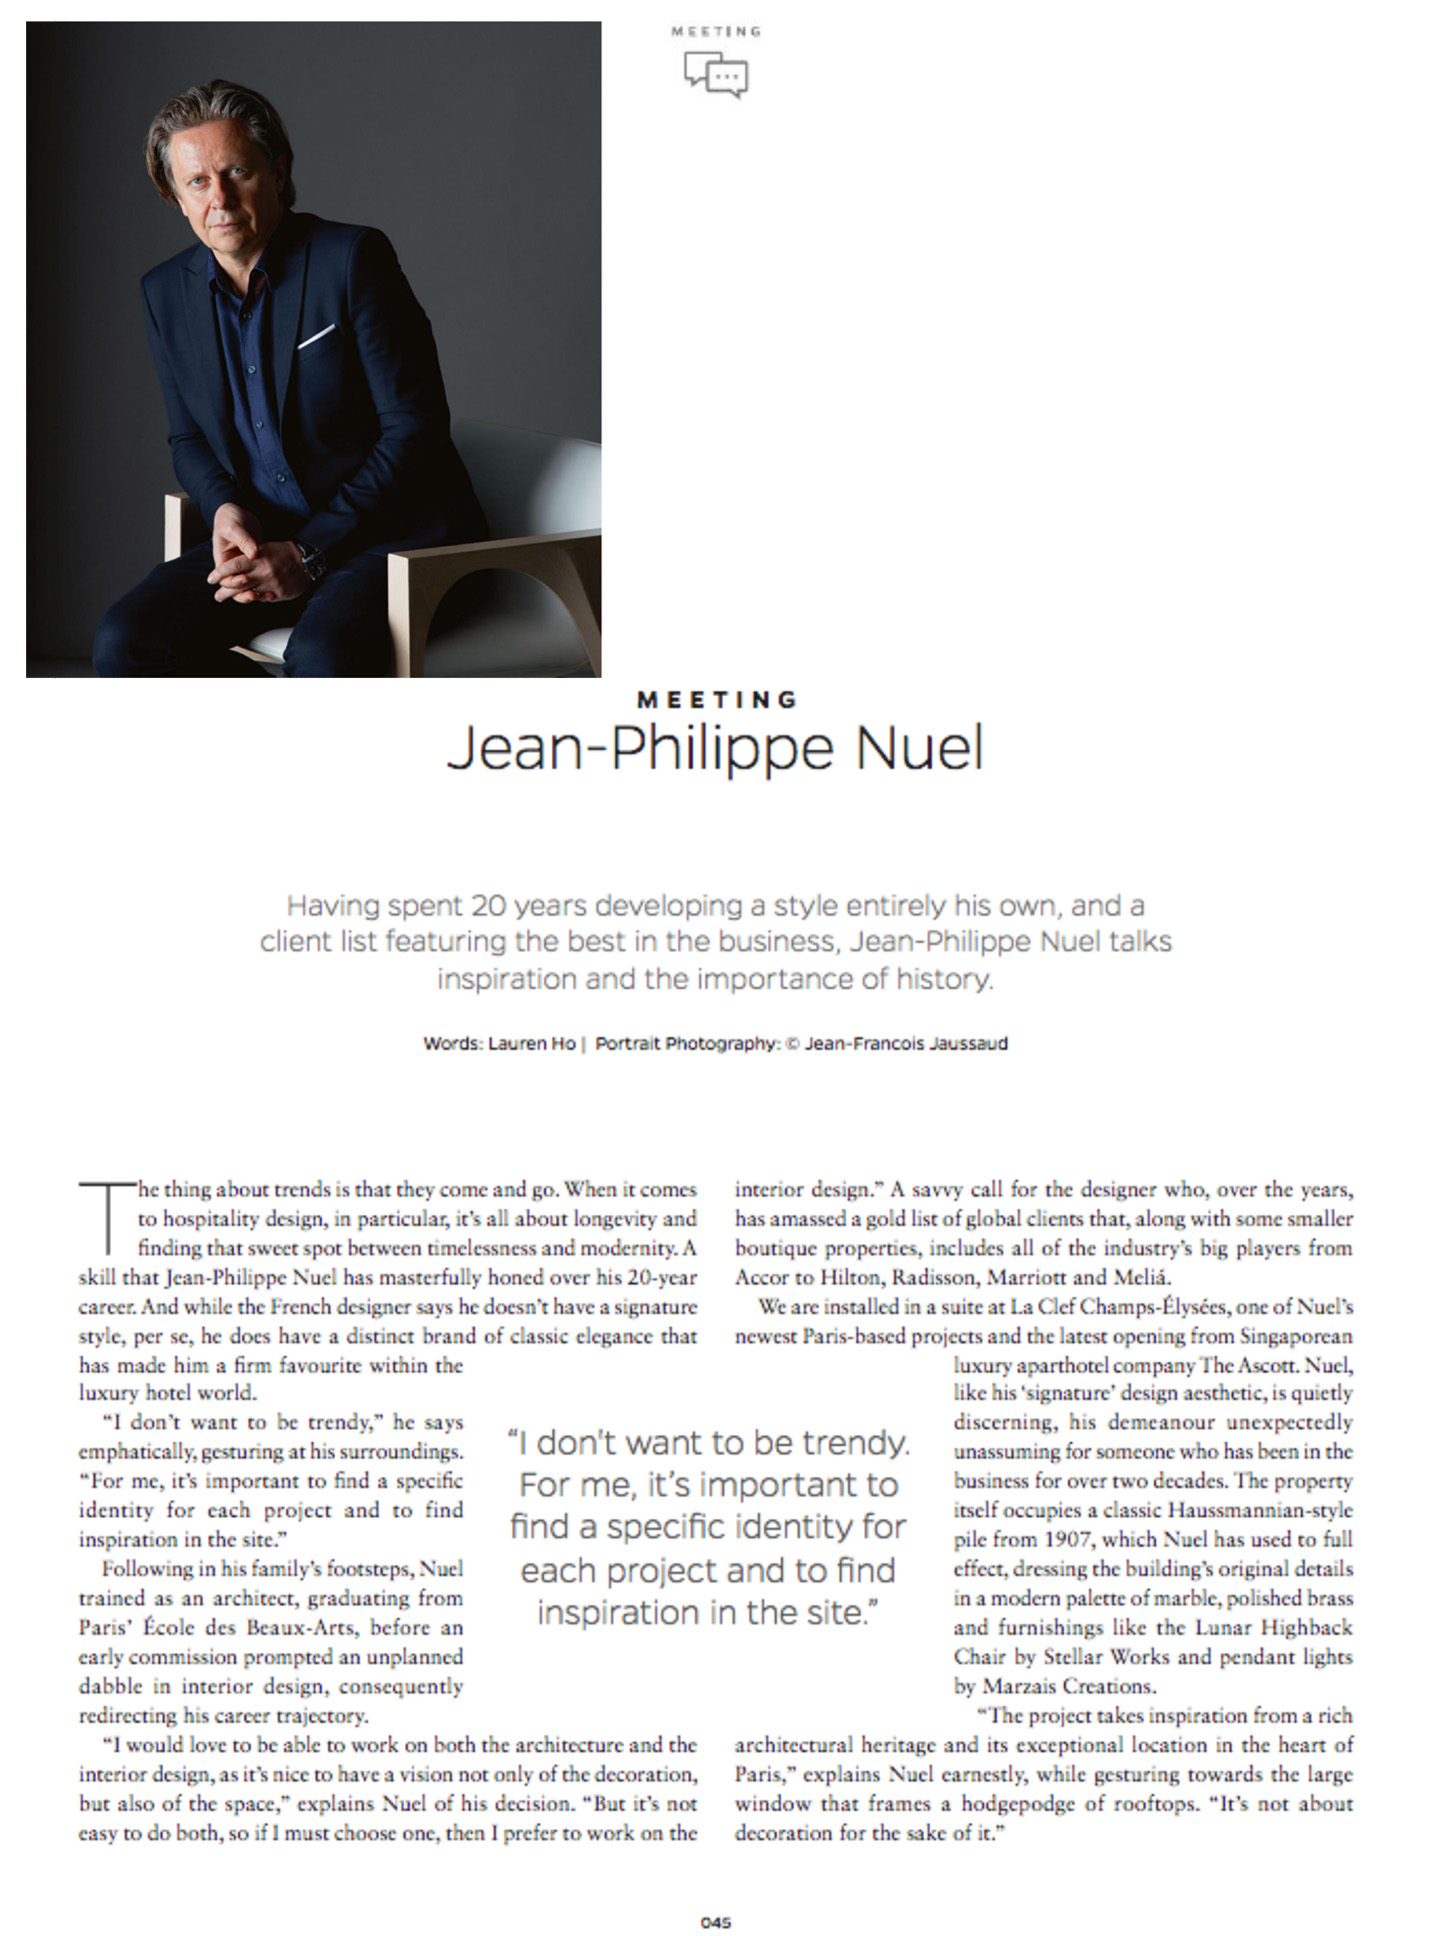 article sur jean-philippe nuel dans le magazine sleeper et son studio d'architecture d'intérieur